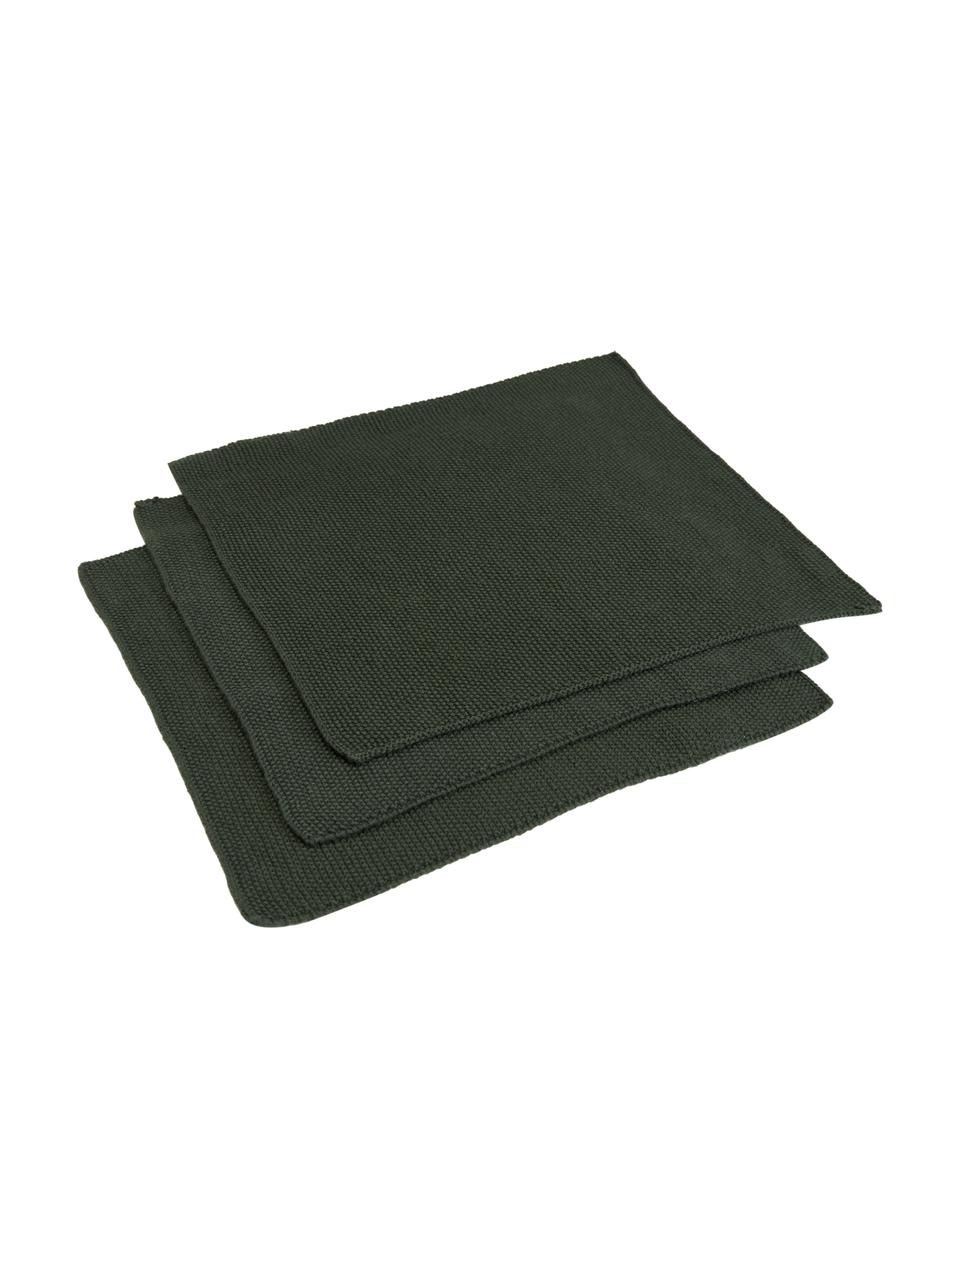 Baumwoll-Spültücher Soft, 3 Stück, 100 % Baumwolle, Dunkelgrün, B 29 x L 30 cm